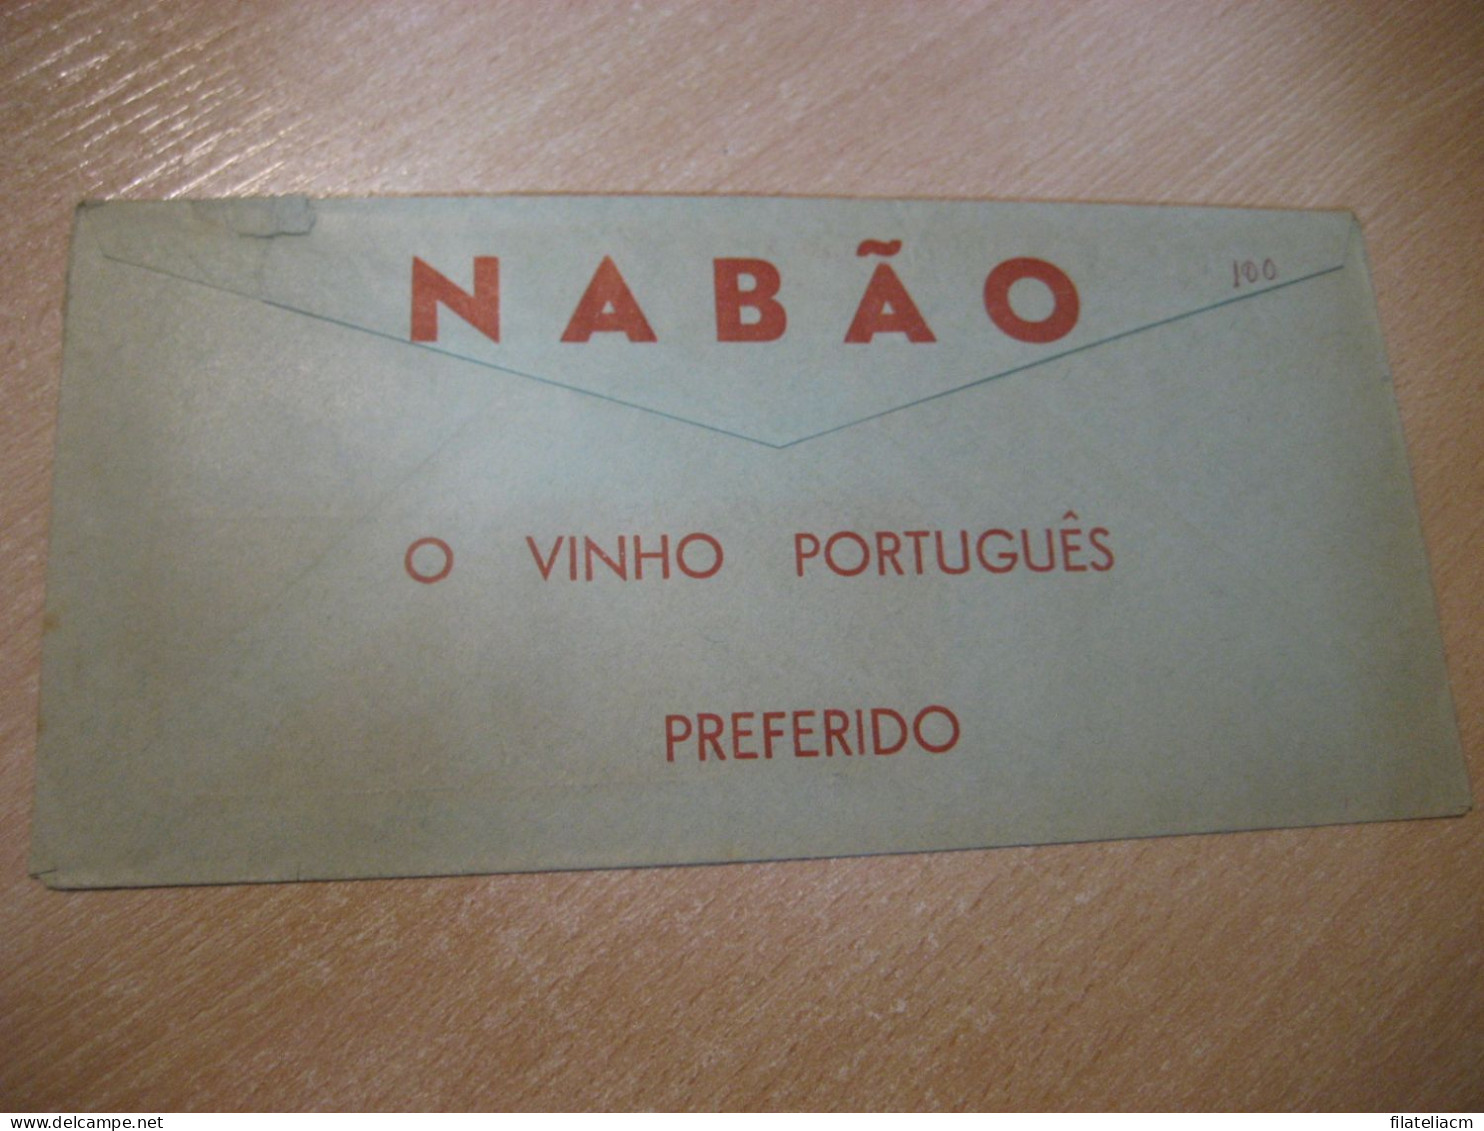 LISBOA 1959 Aguardente 1920 Serradagres Meter Mail Cancel NABAO Vinho Wine Enology Slight Faults Cover PORTUGAL - Cartas & Documentos